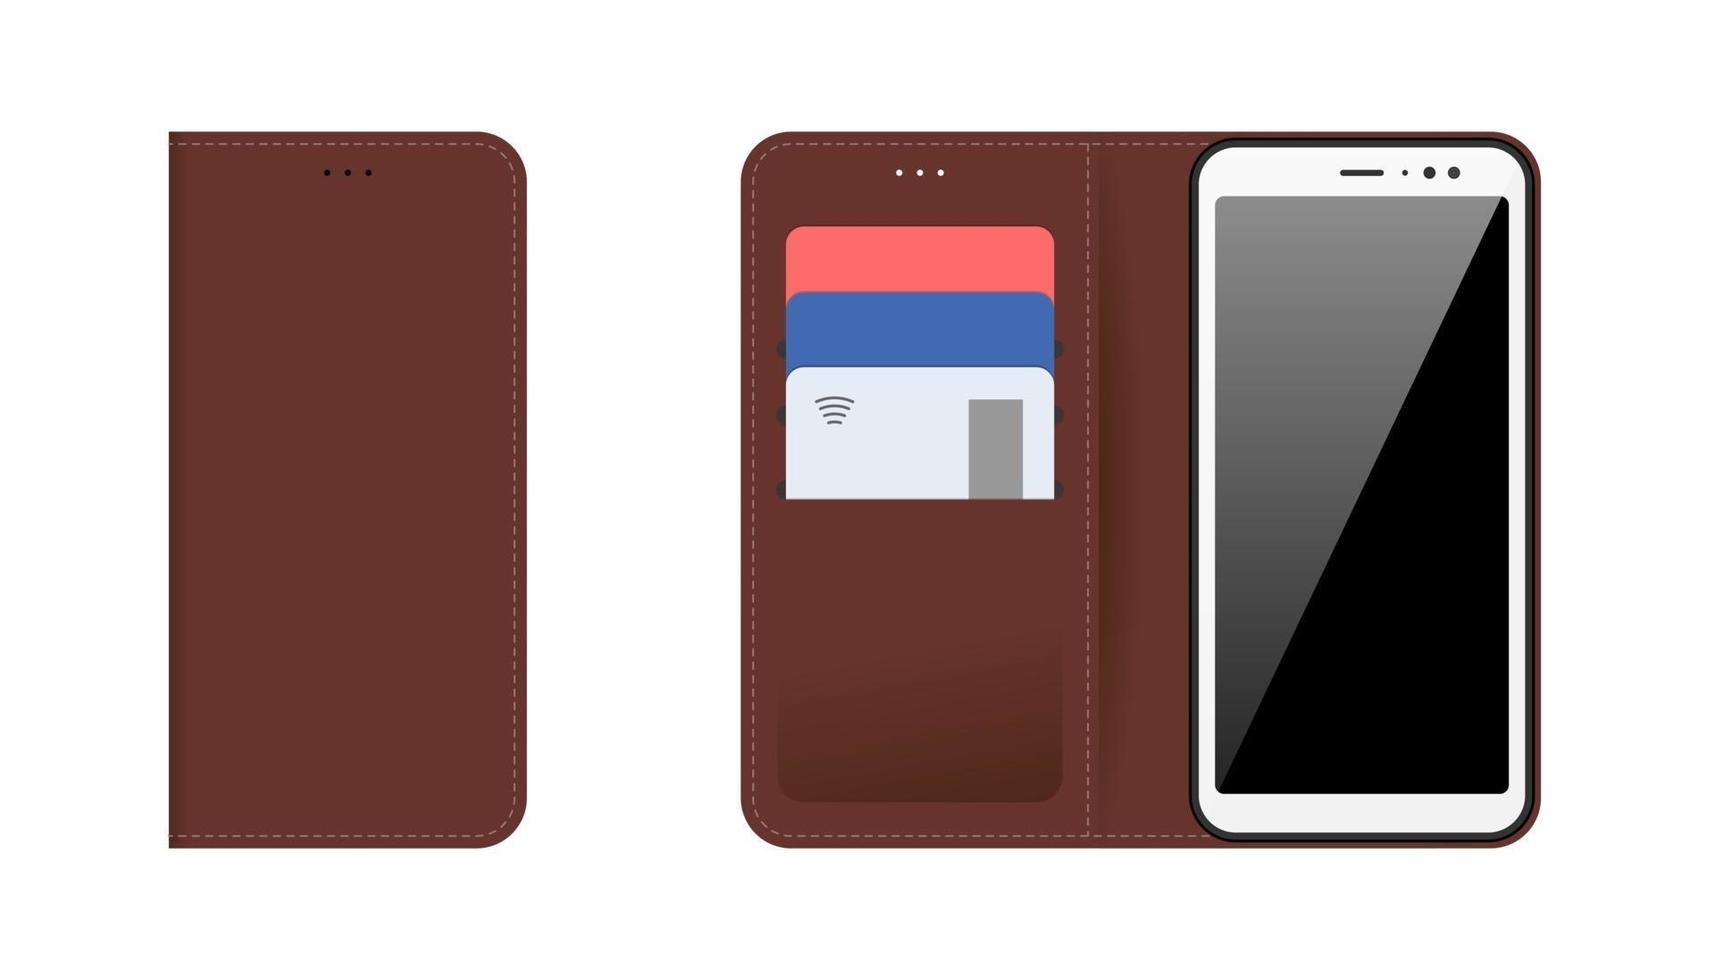 mobil enhet smartphone med öppet och stängt brunt södd läderfodral, bankkort av plast i fickorna. vektor modern platt illustration isoleringsuppsättning